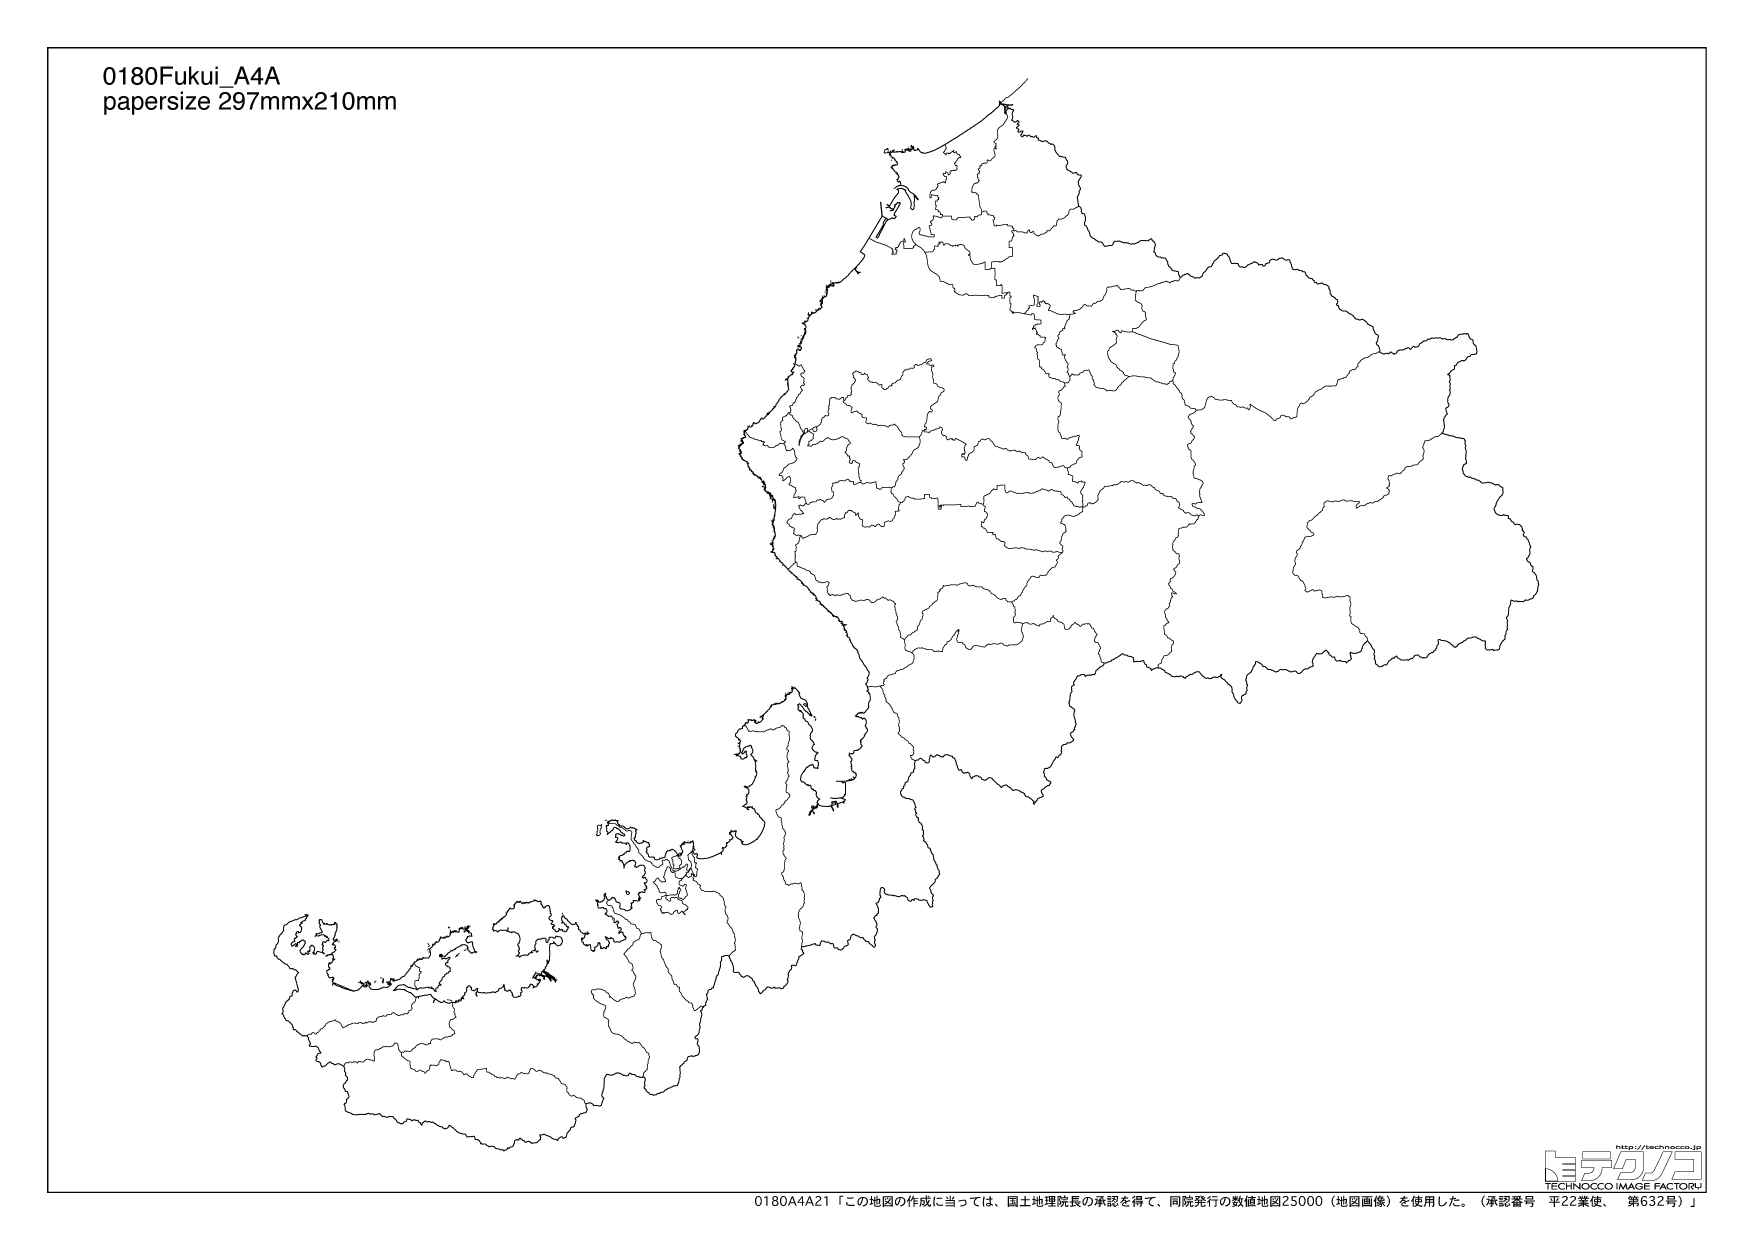 福井県の白地図と市町村の合併情報